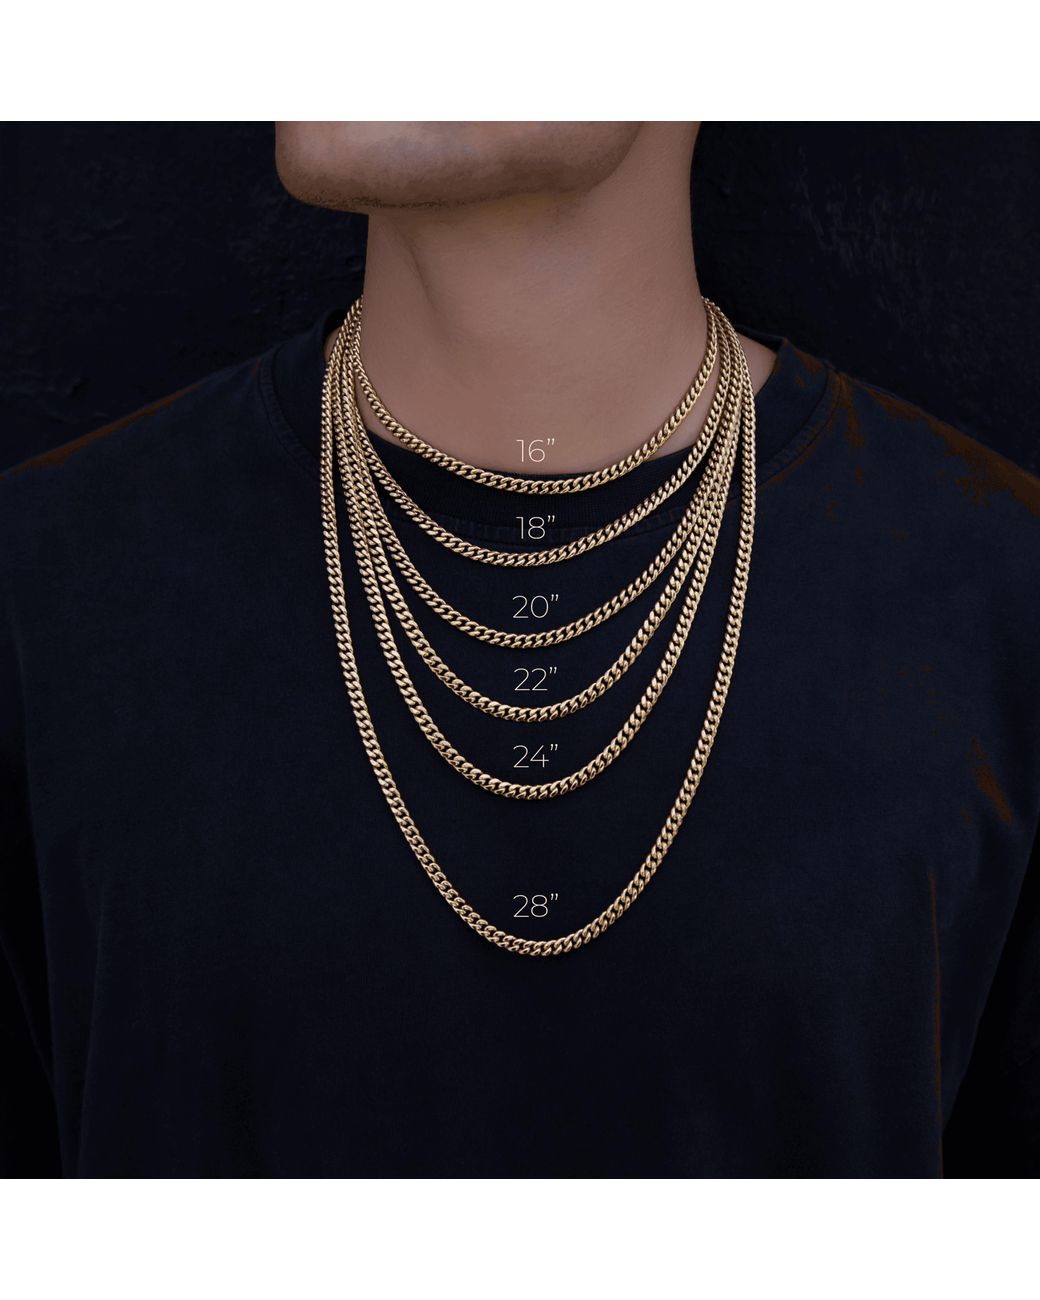 LA Lakers Pendant - lakers chain & necklaces, The GLD Shop